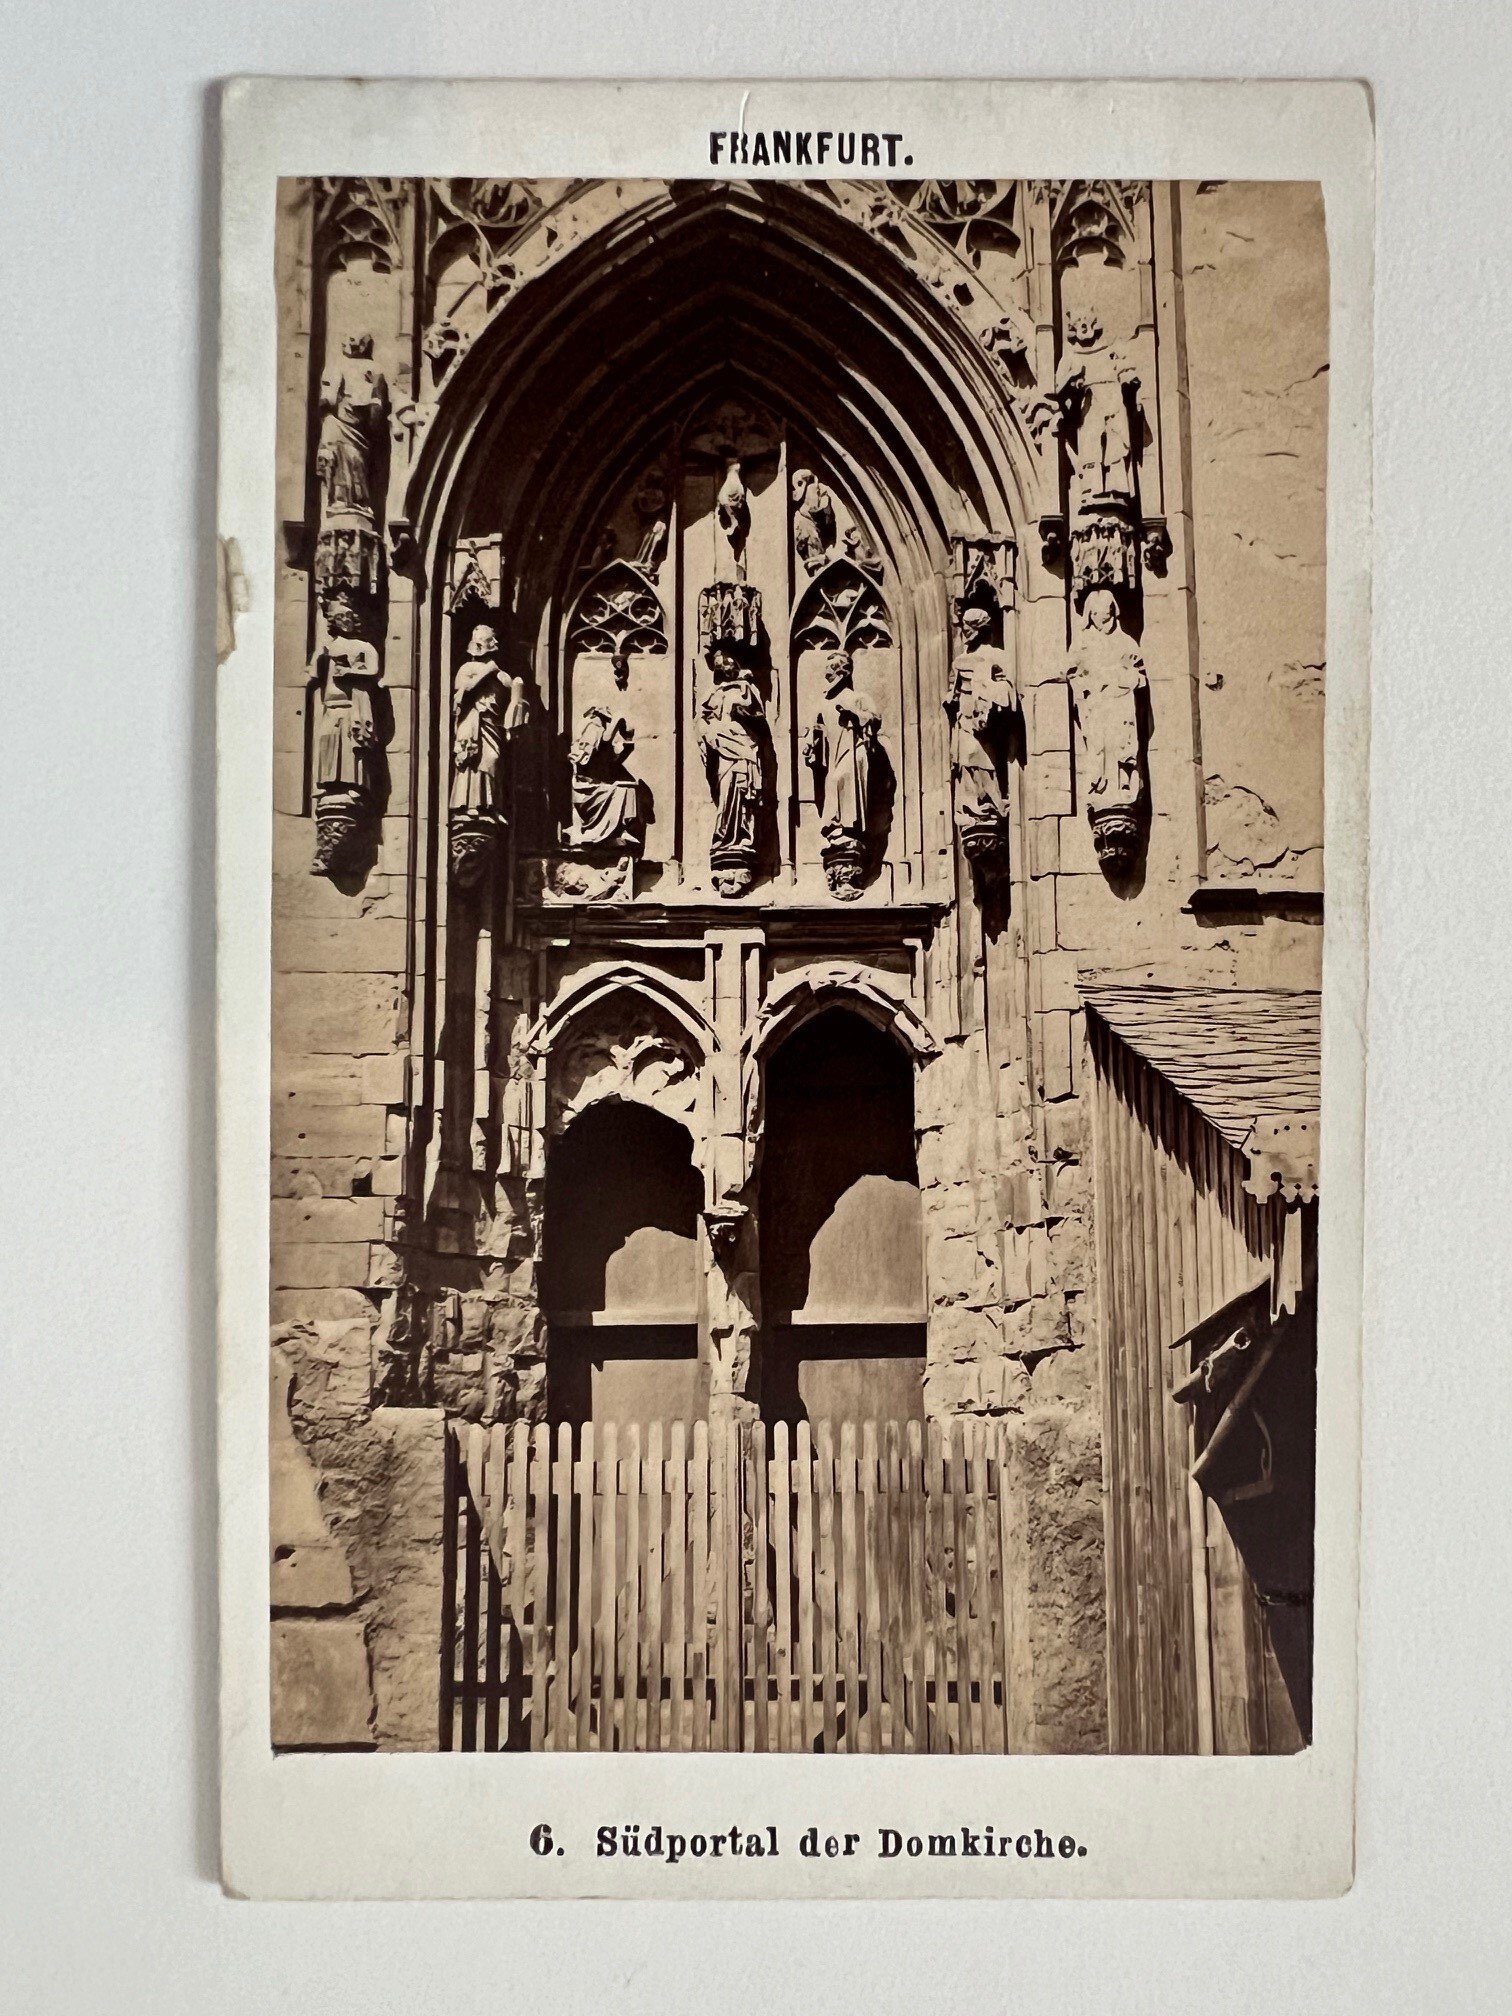 CdV, Frantisek Fridrich, Frankfurt, Nr. 6, Südportal der Domkirche, ca. 1875 (Taunus-Rhein-Main - Regionalgeschichtliche Sammlung Dr. Stefan Naas CC BY-NC-SA)